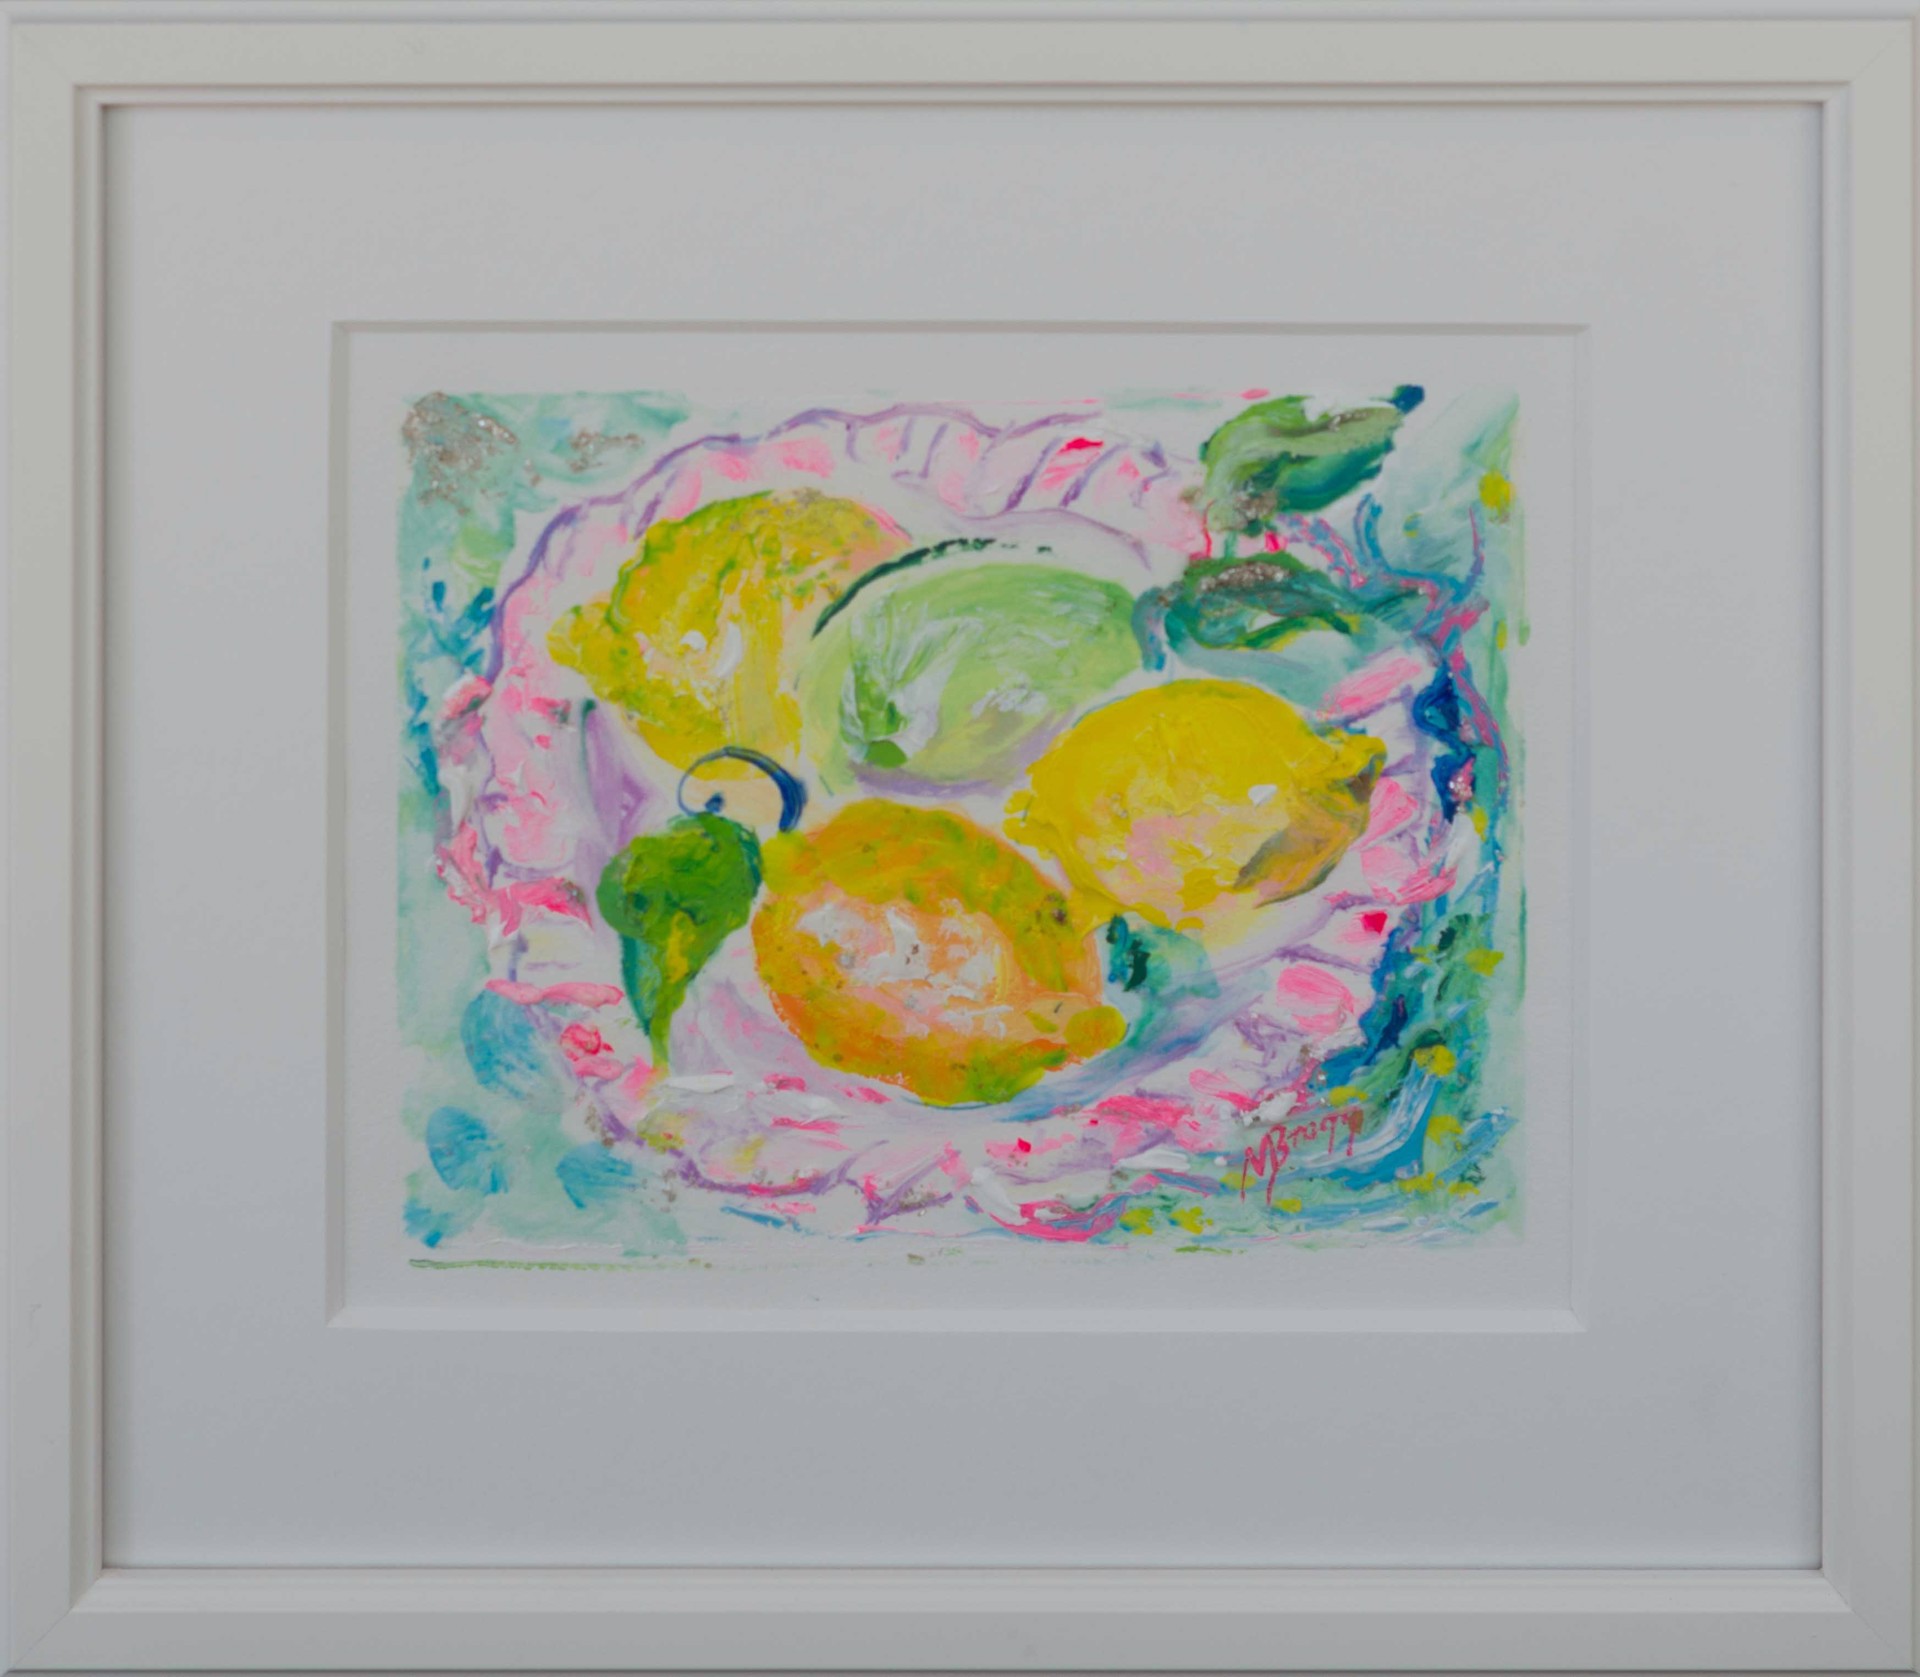 Lemon Quartet by Margaret Bragg